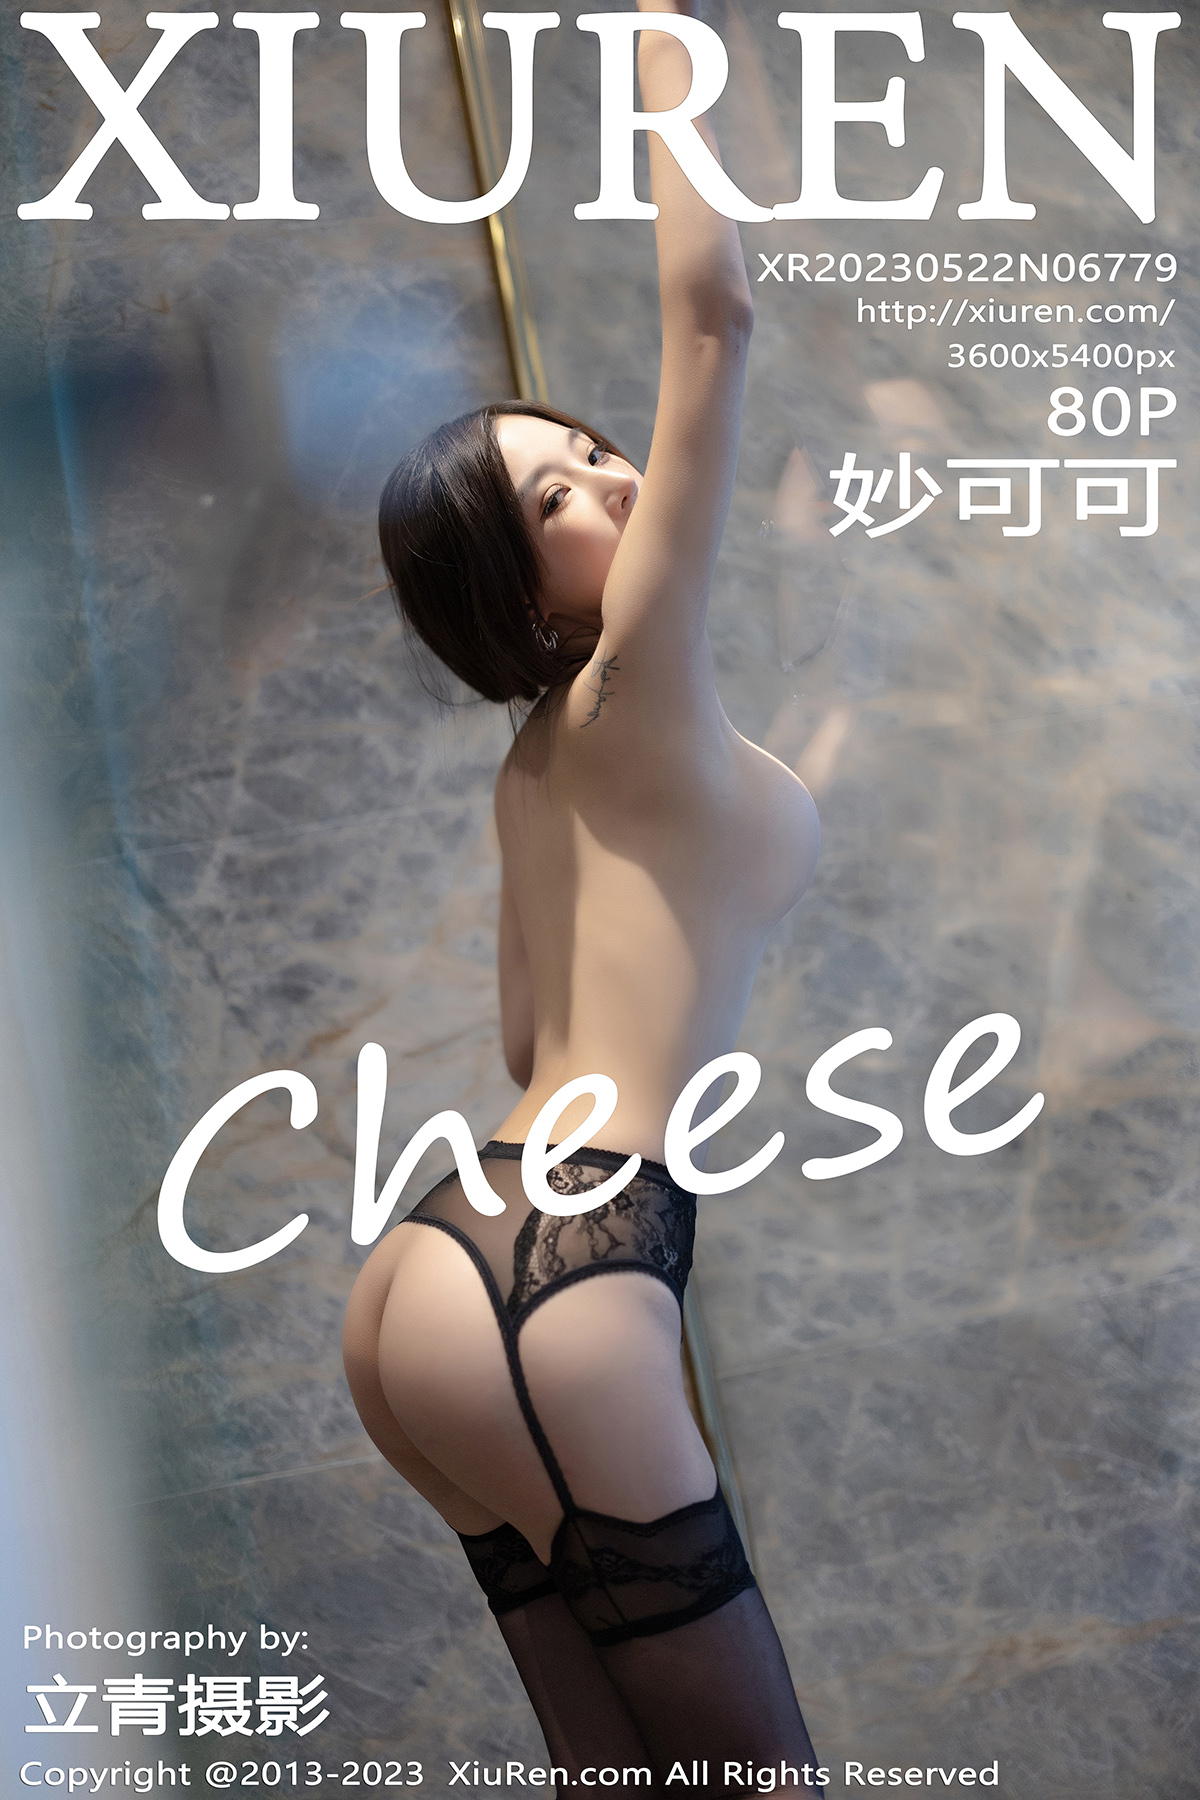 秀人 [XIUREN] 2023.05.22 妙可可Cheese